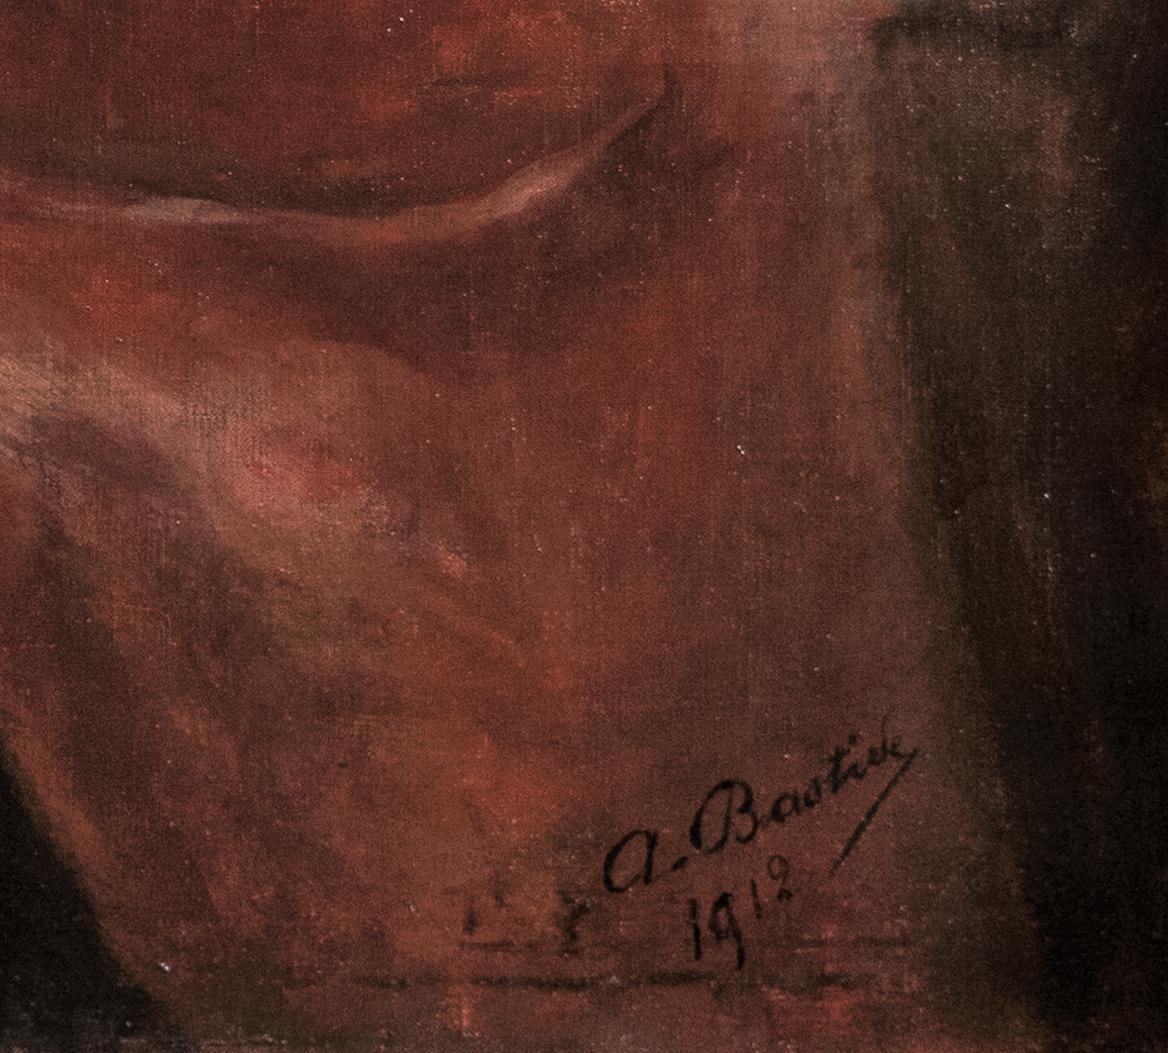 Alice BASTIDE
(Saint Mandé 1868 - Paris 1959)
Portrait d'une petite fille lisant
Huile sur toile
H. 100 cm ; L. 72.5 cm
Signé en bas à droite et daté 1912

Fille d'un pasteur gardois et d'une anglaise, Alice Bastide a grandi à Paris. Élève de